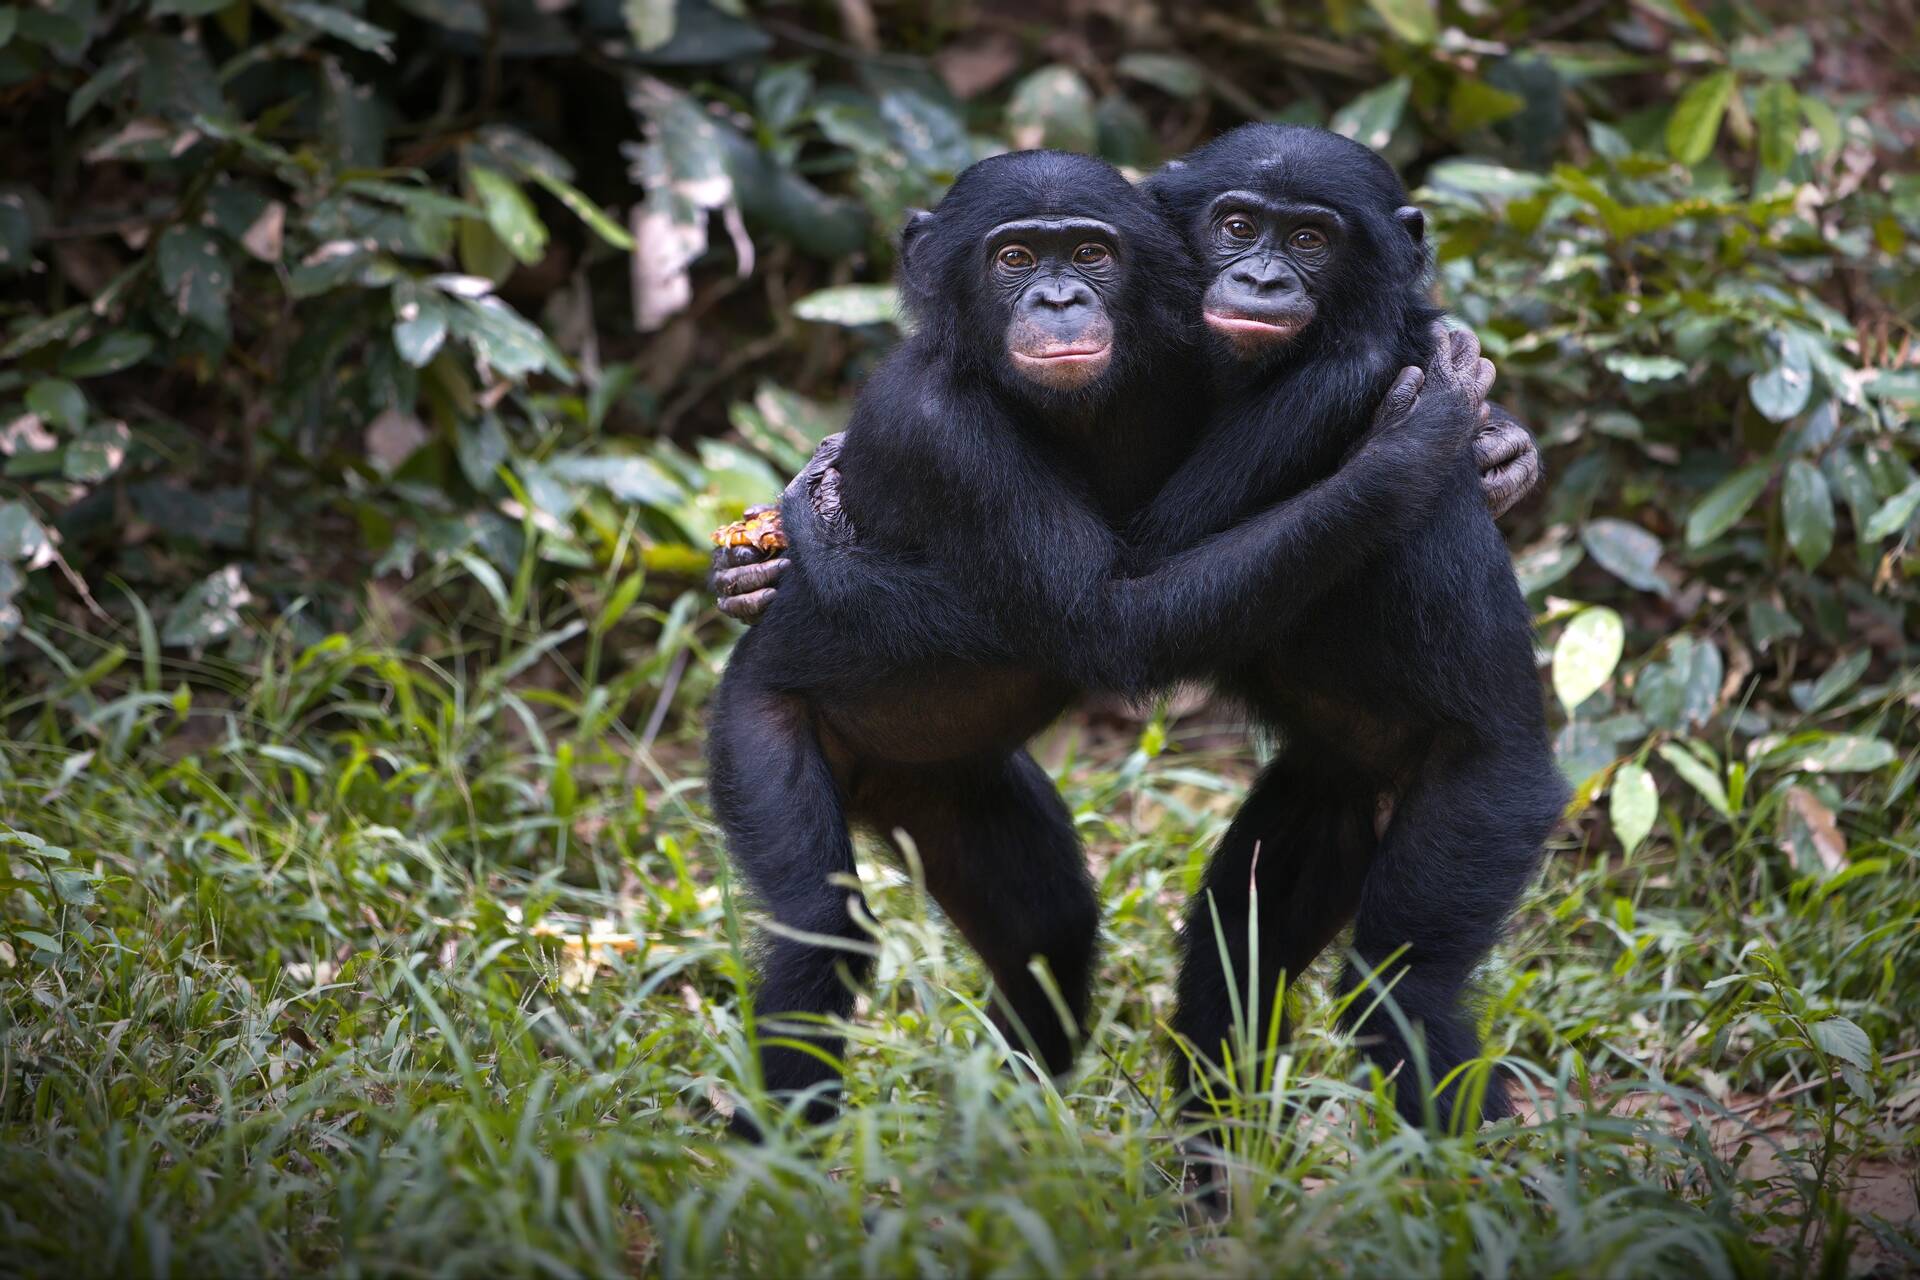 Małpy: zdaniem niektórych naukowców określenie Homo Sapiens jest nieadekwatne i istoty ludzkie należy zaklasyfikować do rodzaju Pan, tak samo jak szympans zwyczajny i bonobo